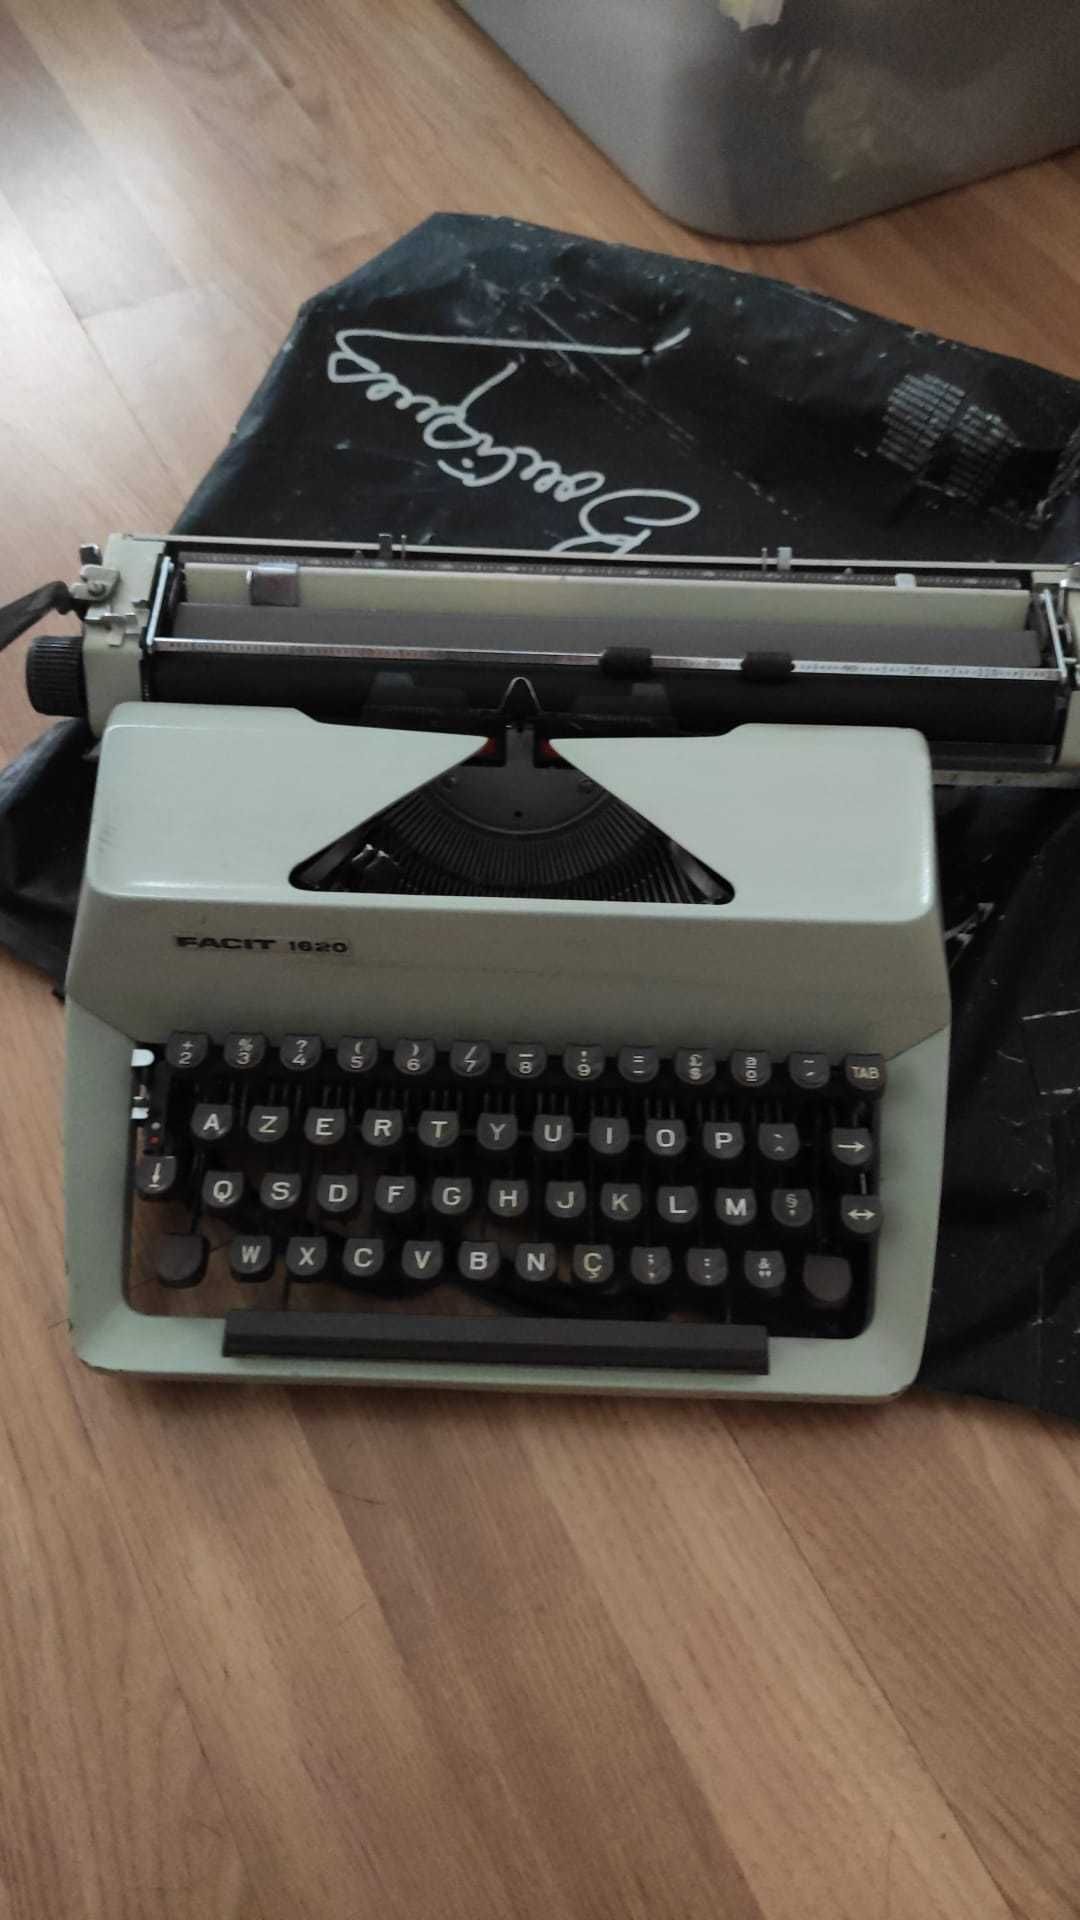 Máquina de escrever Favor 1620